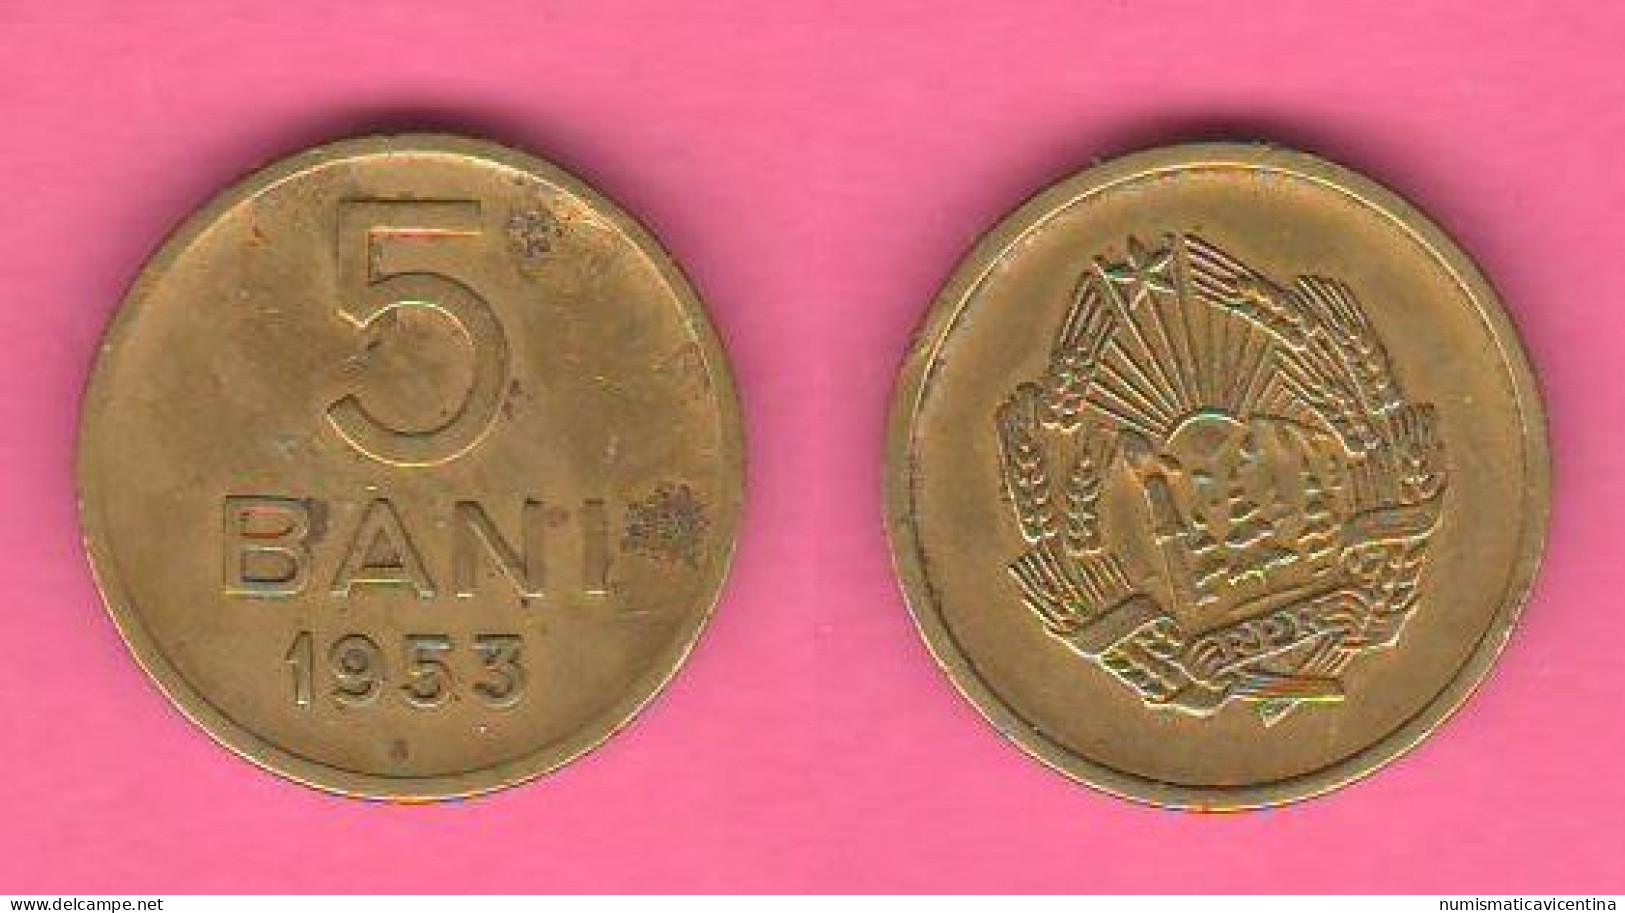 Romania 5 Bani 1953 Romanie Copper Zinc Coin - Romania